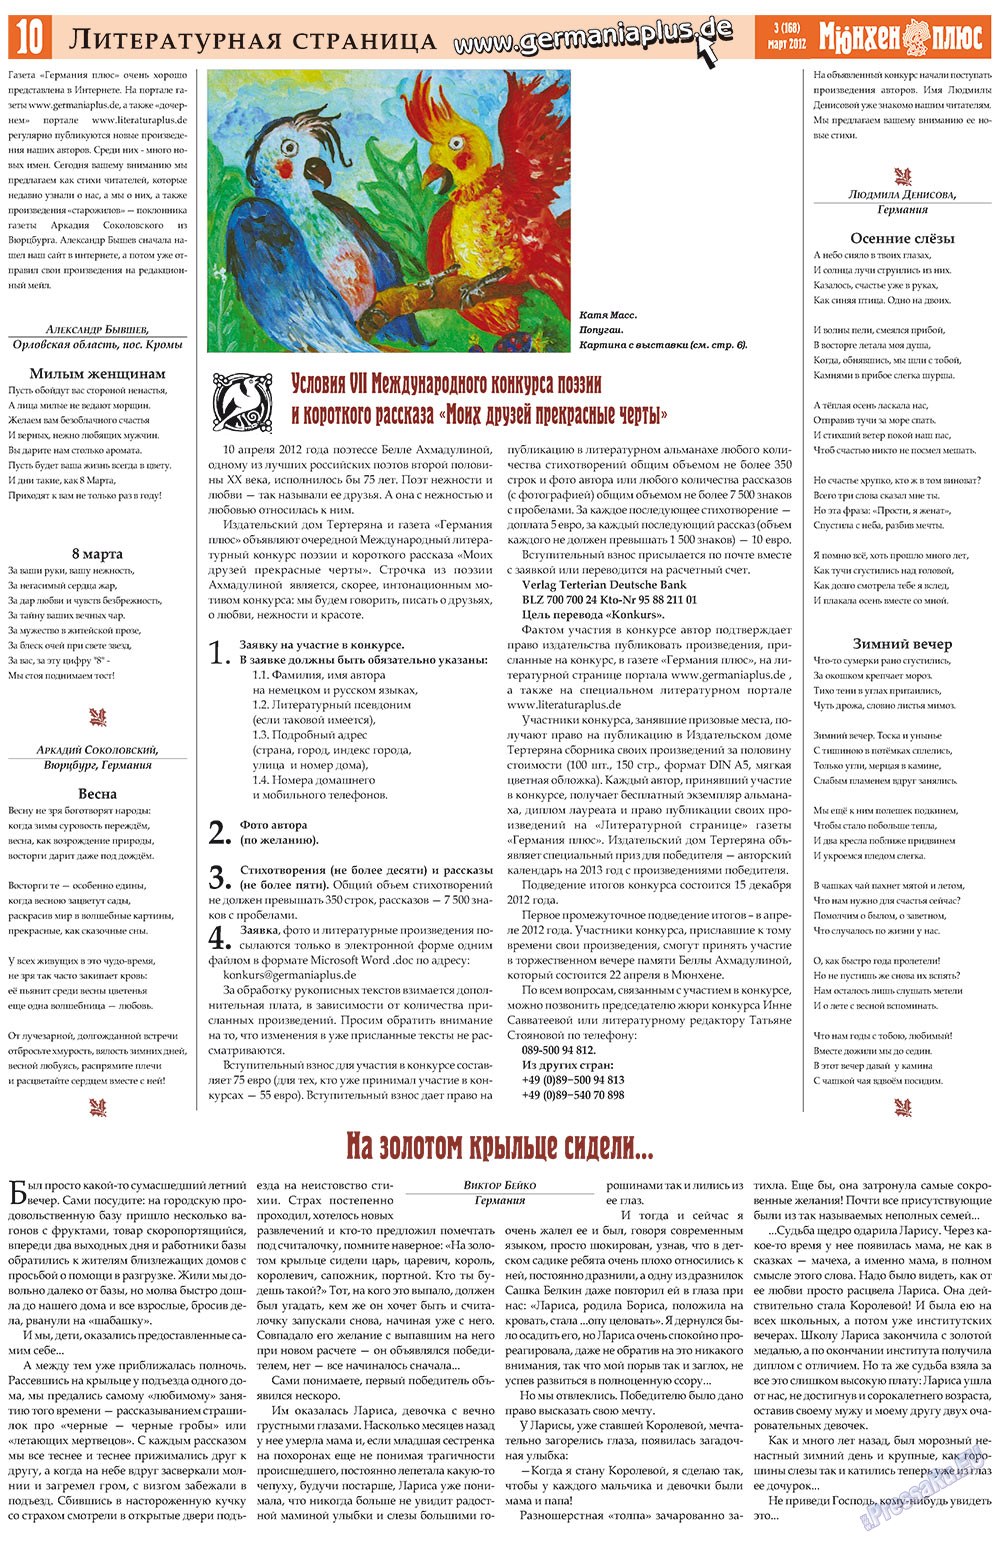 Германия плюс (газета). 2012 год, номер 3, стр. 10